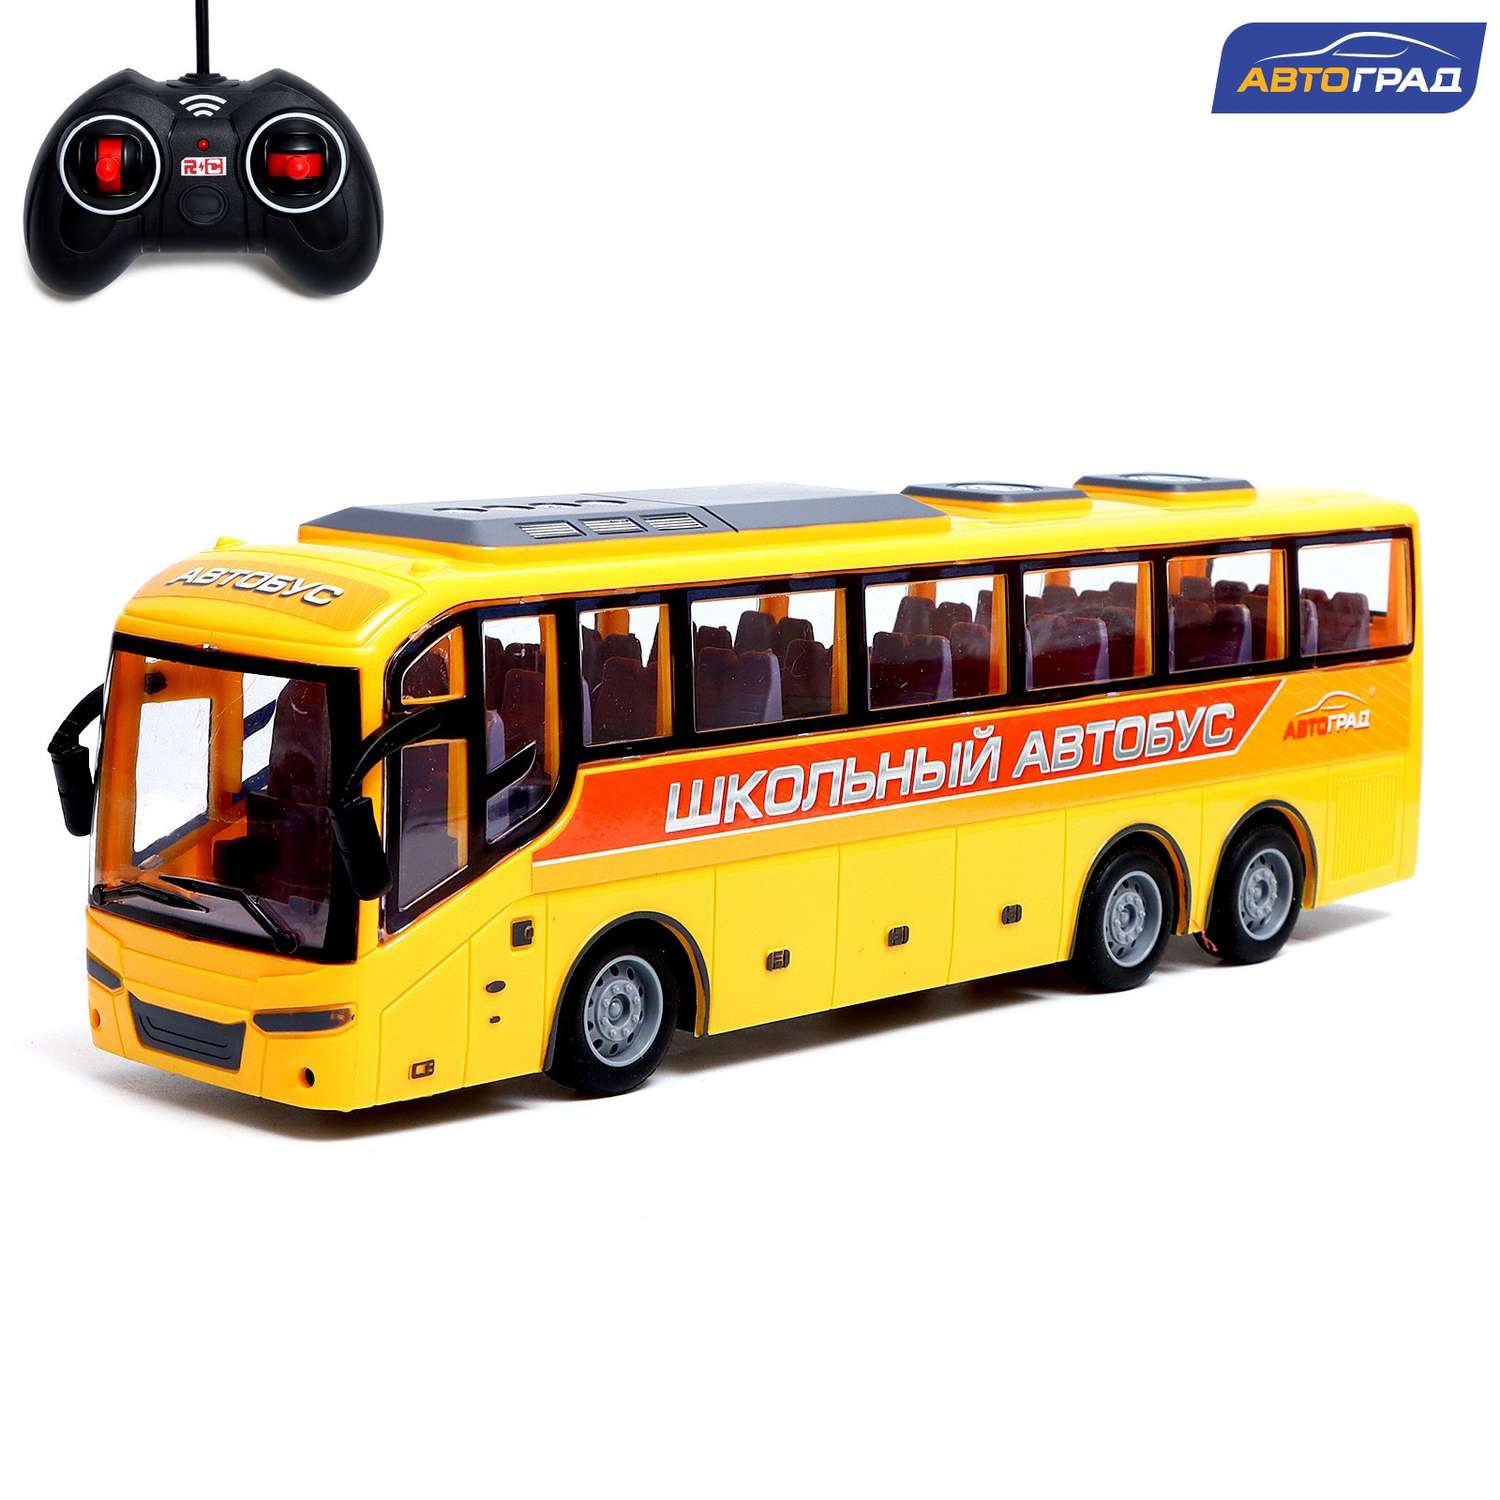 Автобус Автоград радиоуправляемый «Школьный» масштаб 1:30 работает от батареек цвет жёлтый - фото 1